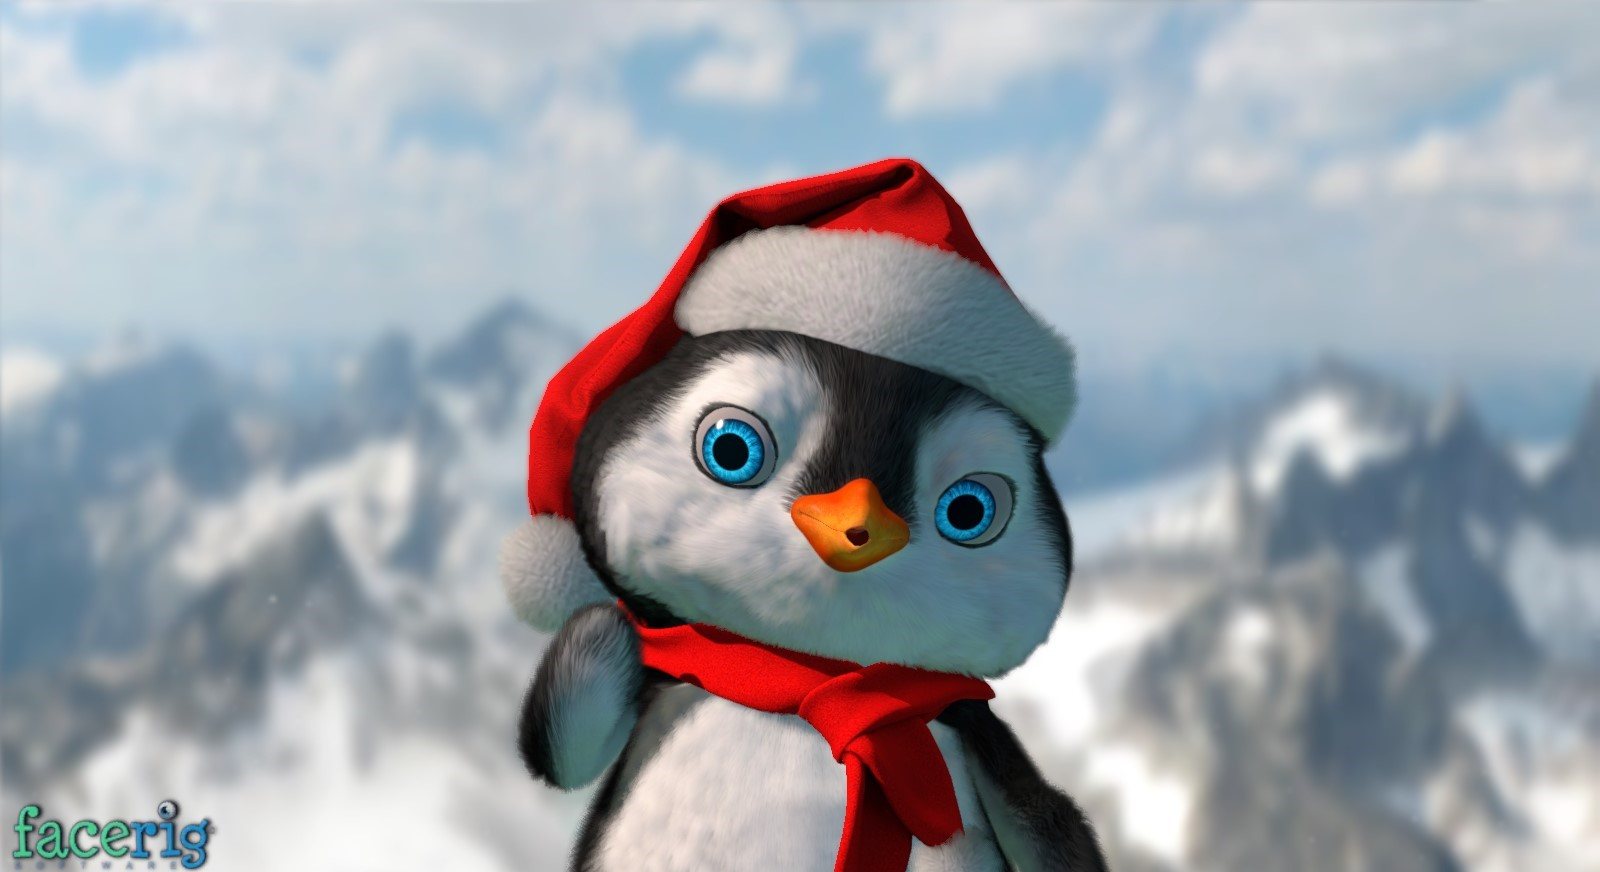 FaceRig - Winter Holidays Avatars 2015 DLC Steam CD Key 2.71$